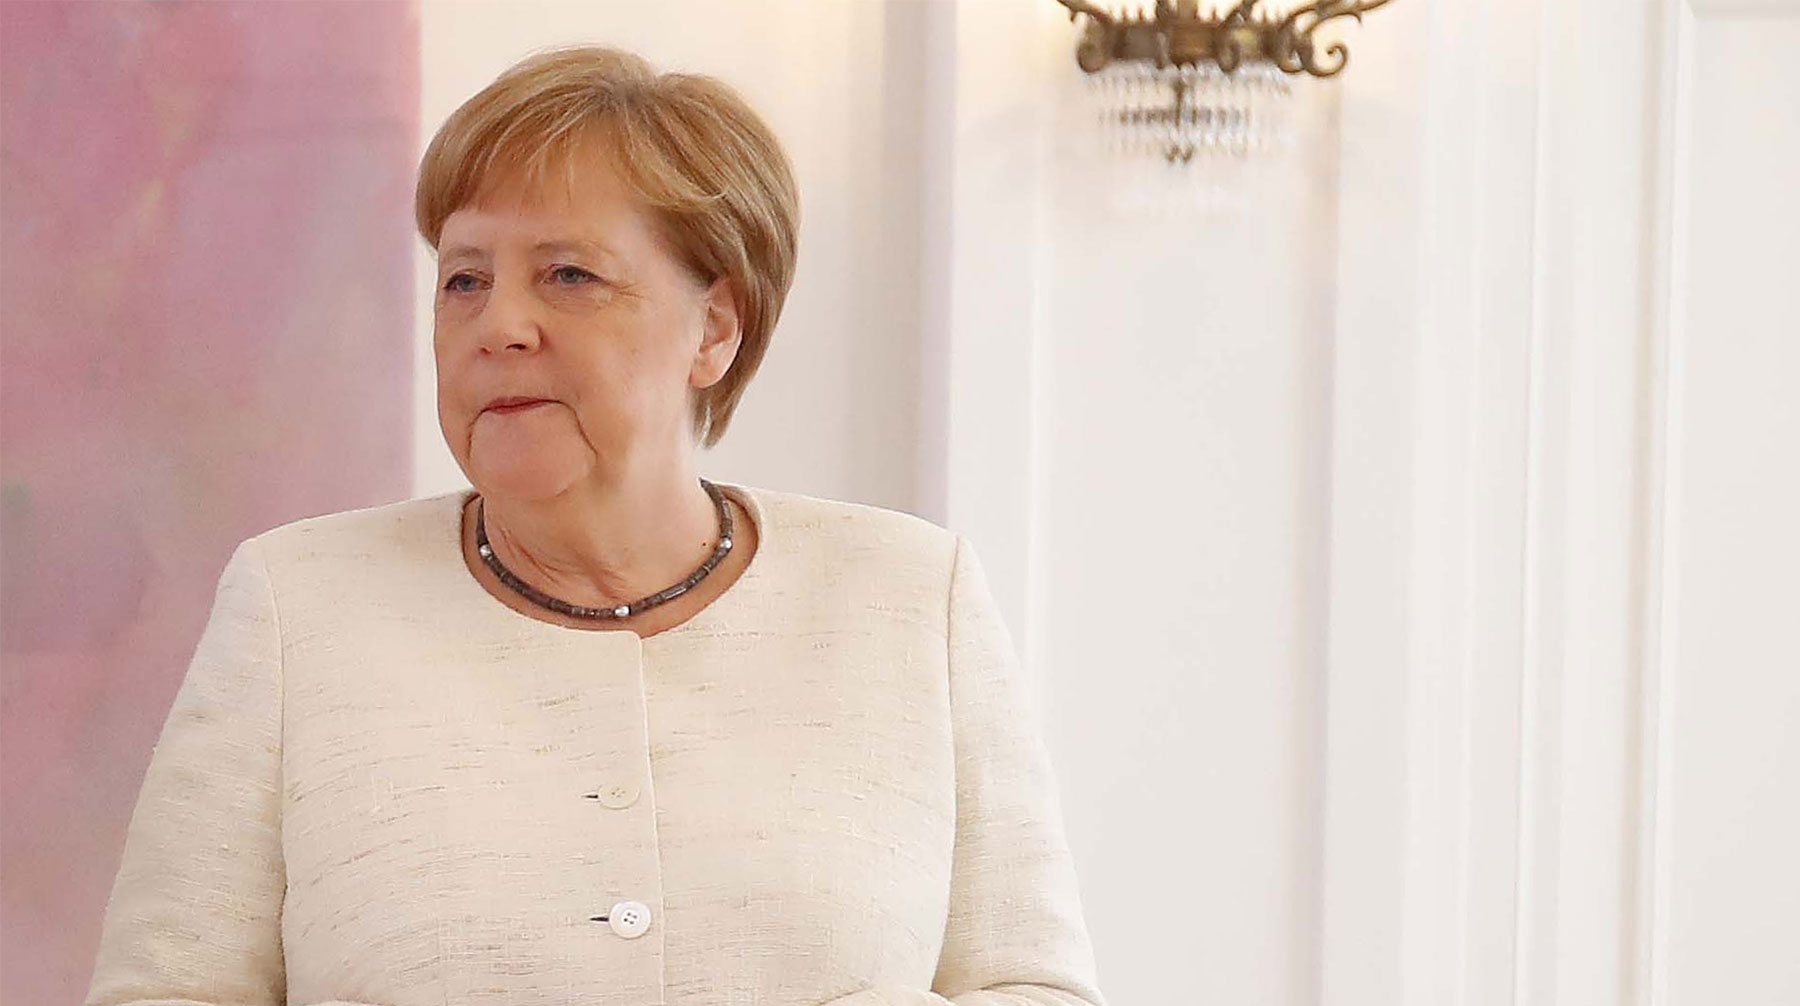 Ангеле Меркель стало плохо, во второй раз за две недели Фото: © GLOBAL LOOK press / Darmer/Davids/Ropi